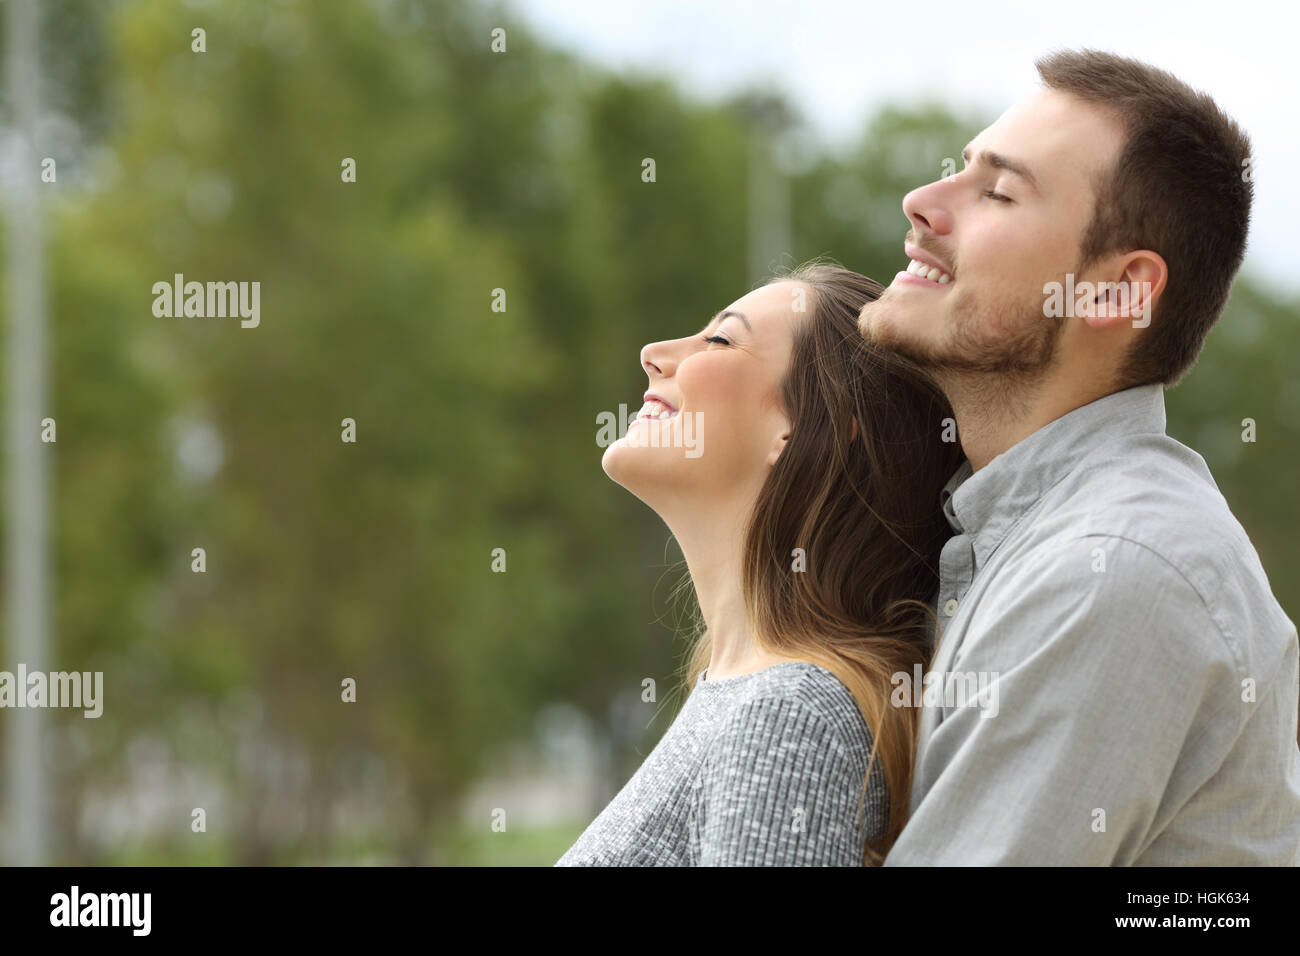 Vue de côté portrait d'un couple heureux, respirant l'air frais dans un parc avec des arbres verts dans l'arrière-plan Banque D'Images